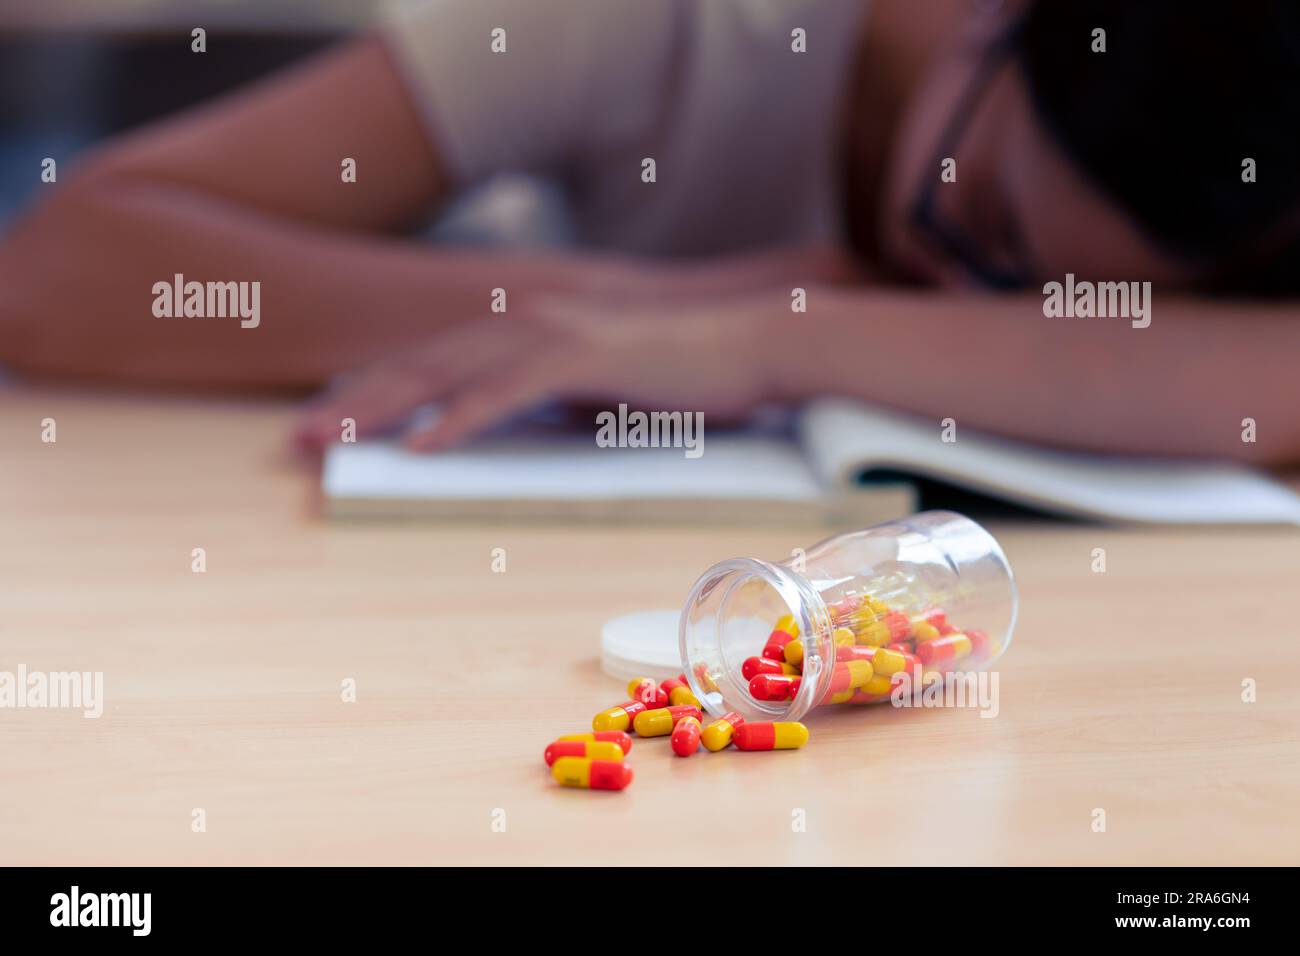 Giovane studente adolescente con pillola della capsula della medicina per alleviare il dolore o ridurre lo stress da studiare duramente. Foto Stock